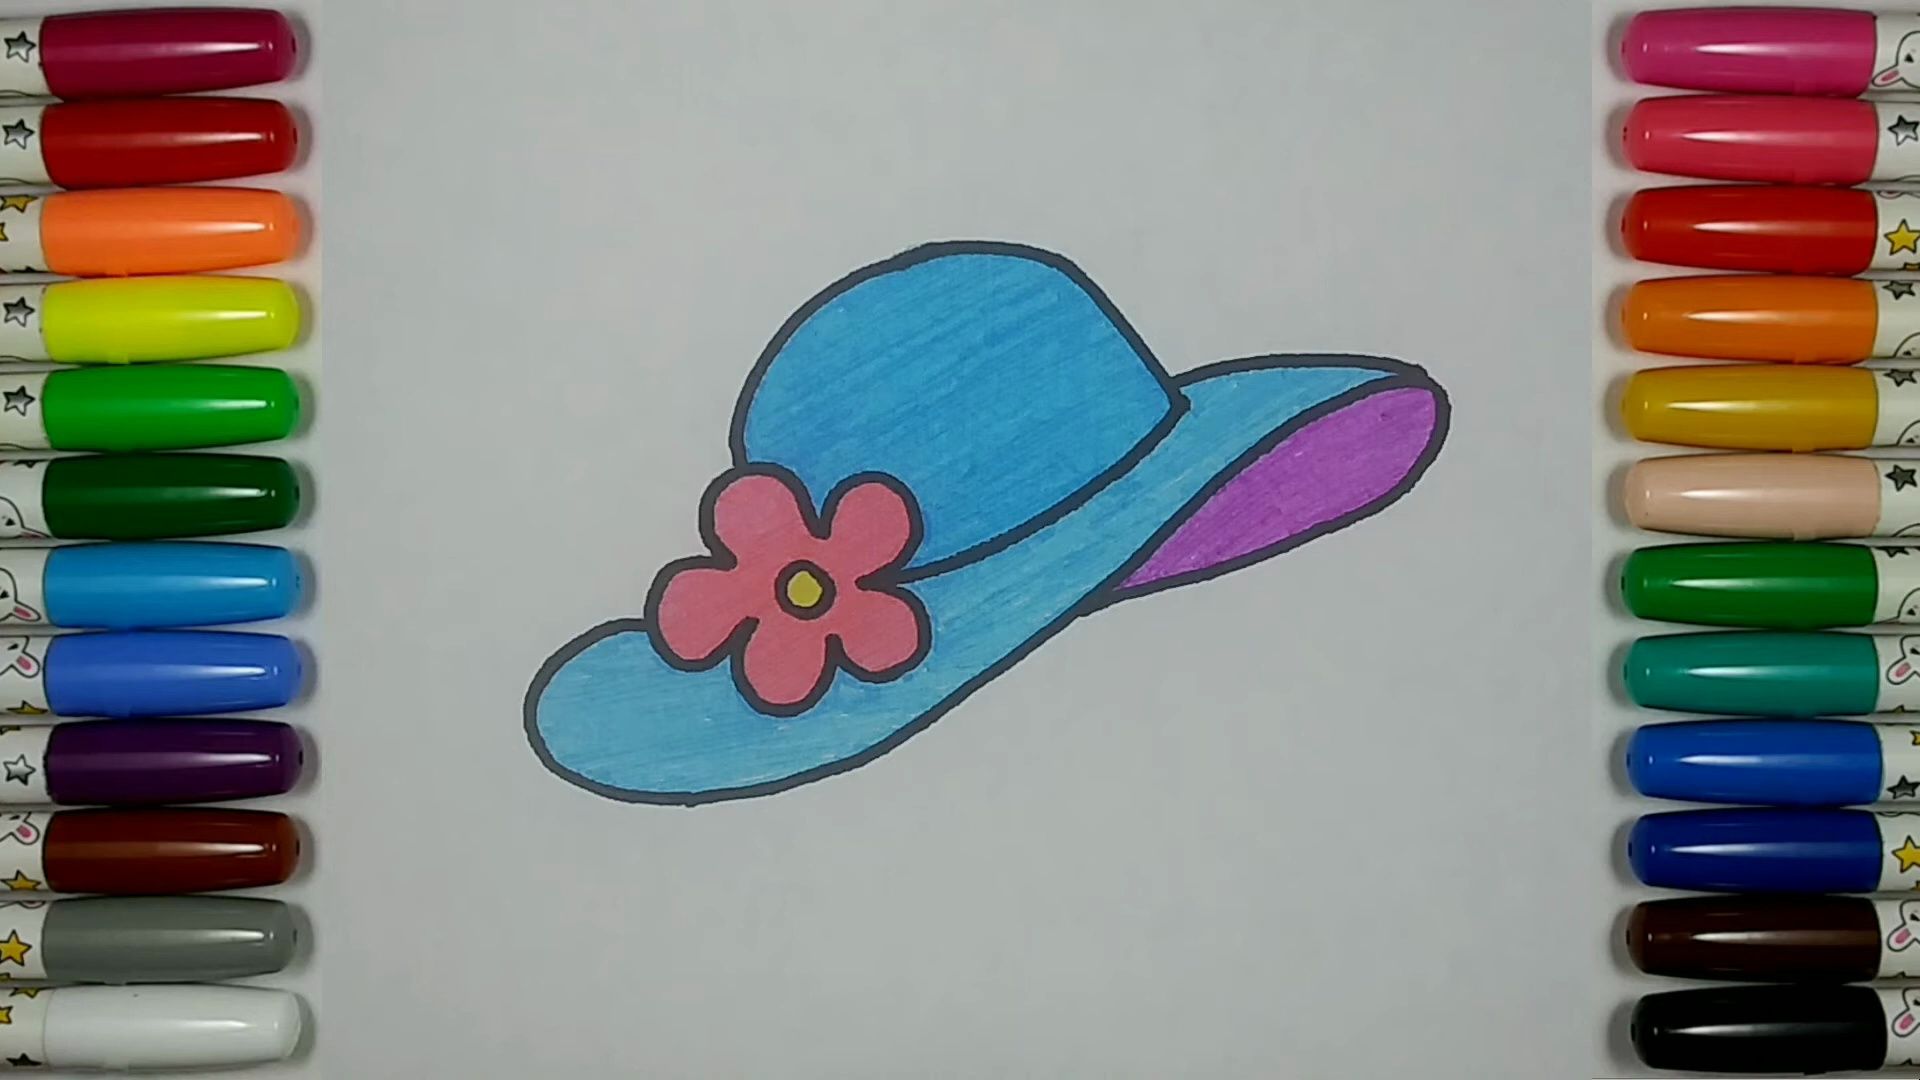 【儿童简笔画教程】画一顶漂亮的帽子:时尚的配饰!